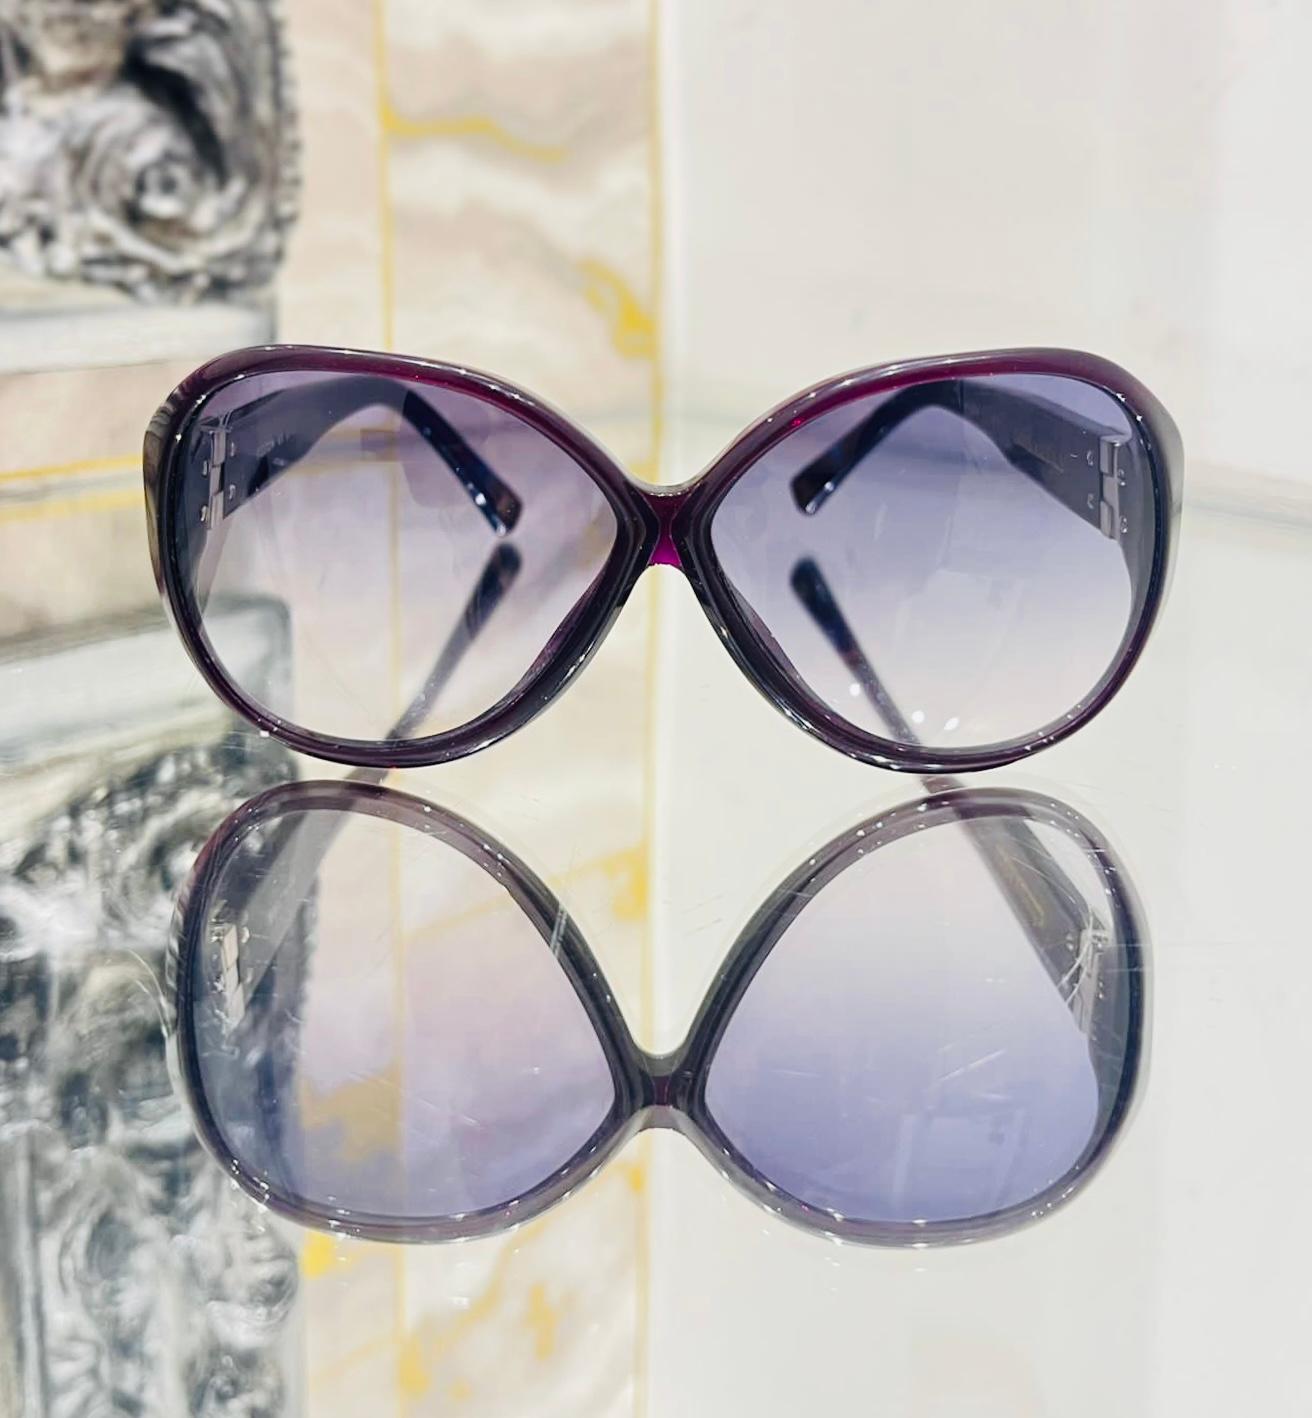 Louis Vuitton Lunettes de soleil surdimensionnées

Lunettes de soleil à monture violette avec des bords arrondis et des verres dégradés bleus.

Il est doté de bras détaillés en paillettes avec incrustation argentée des symboles du monogramme